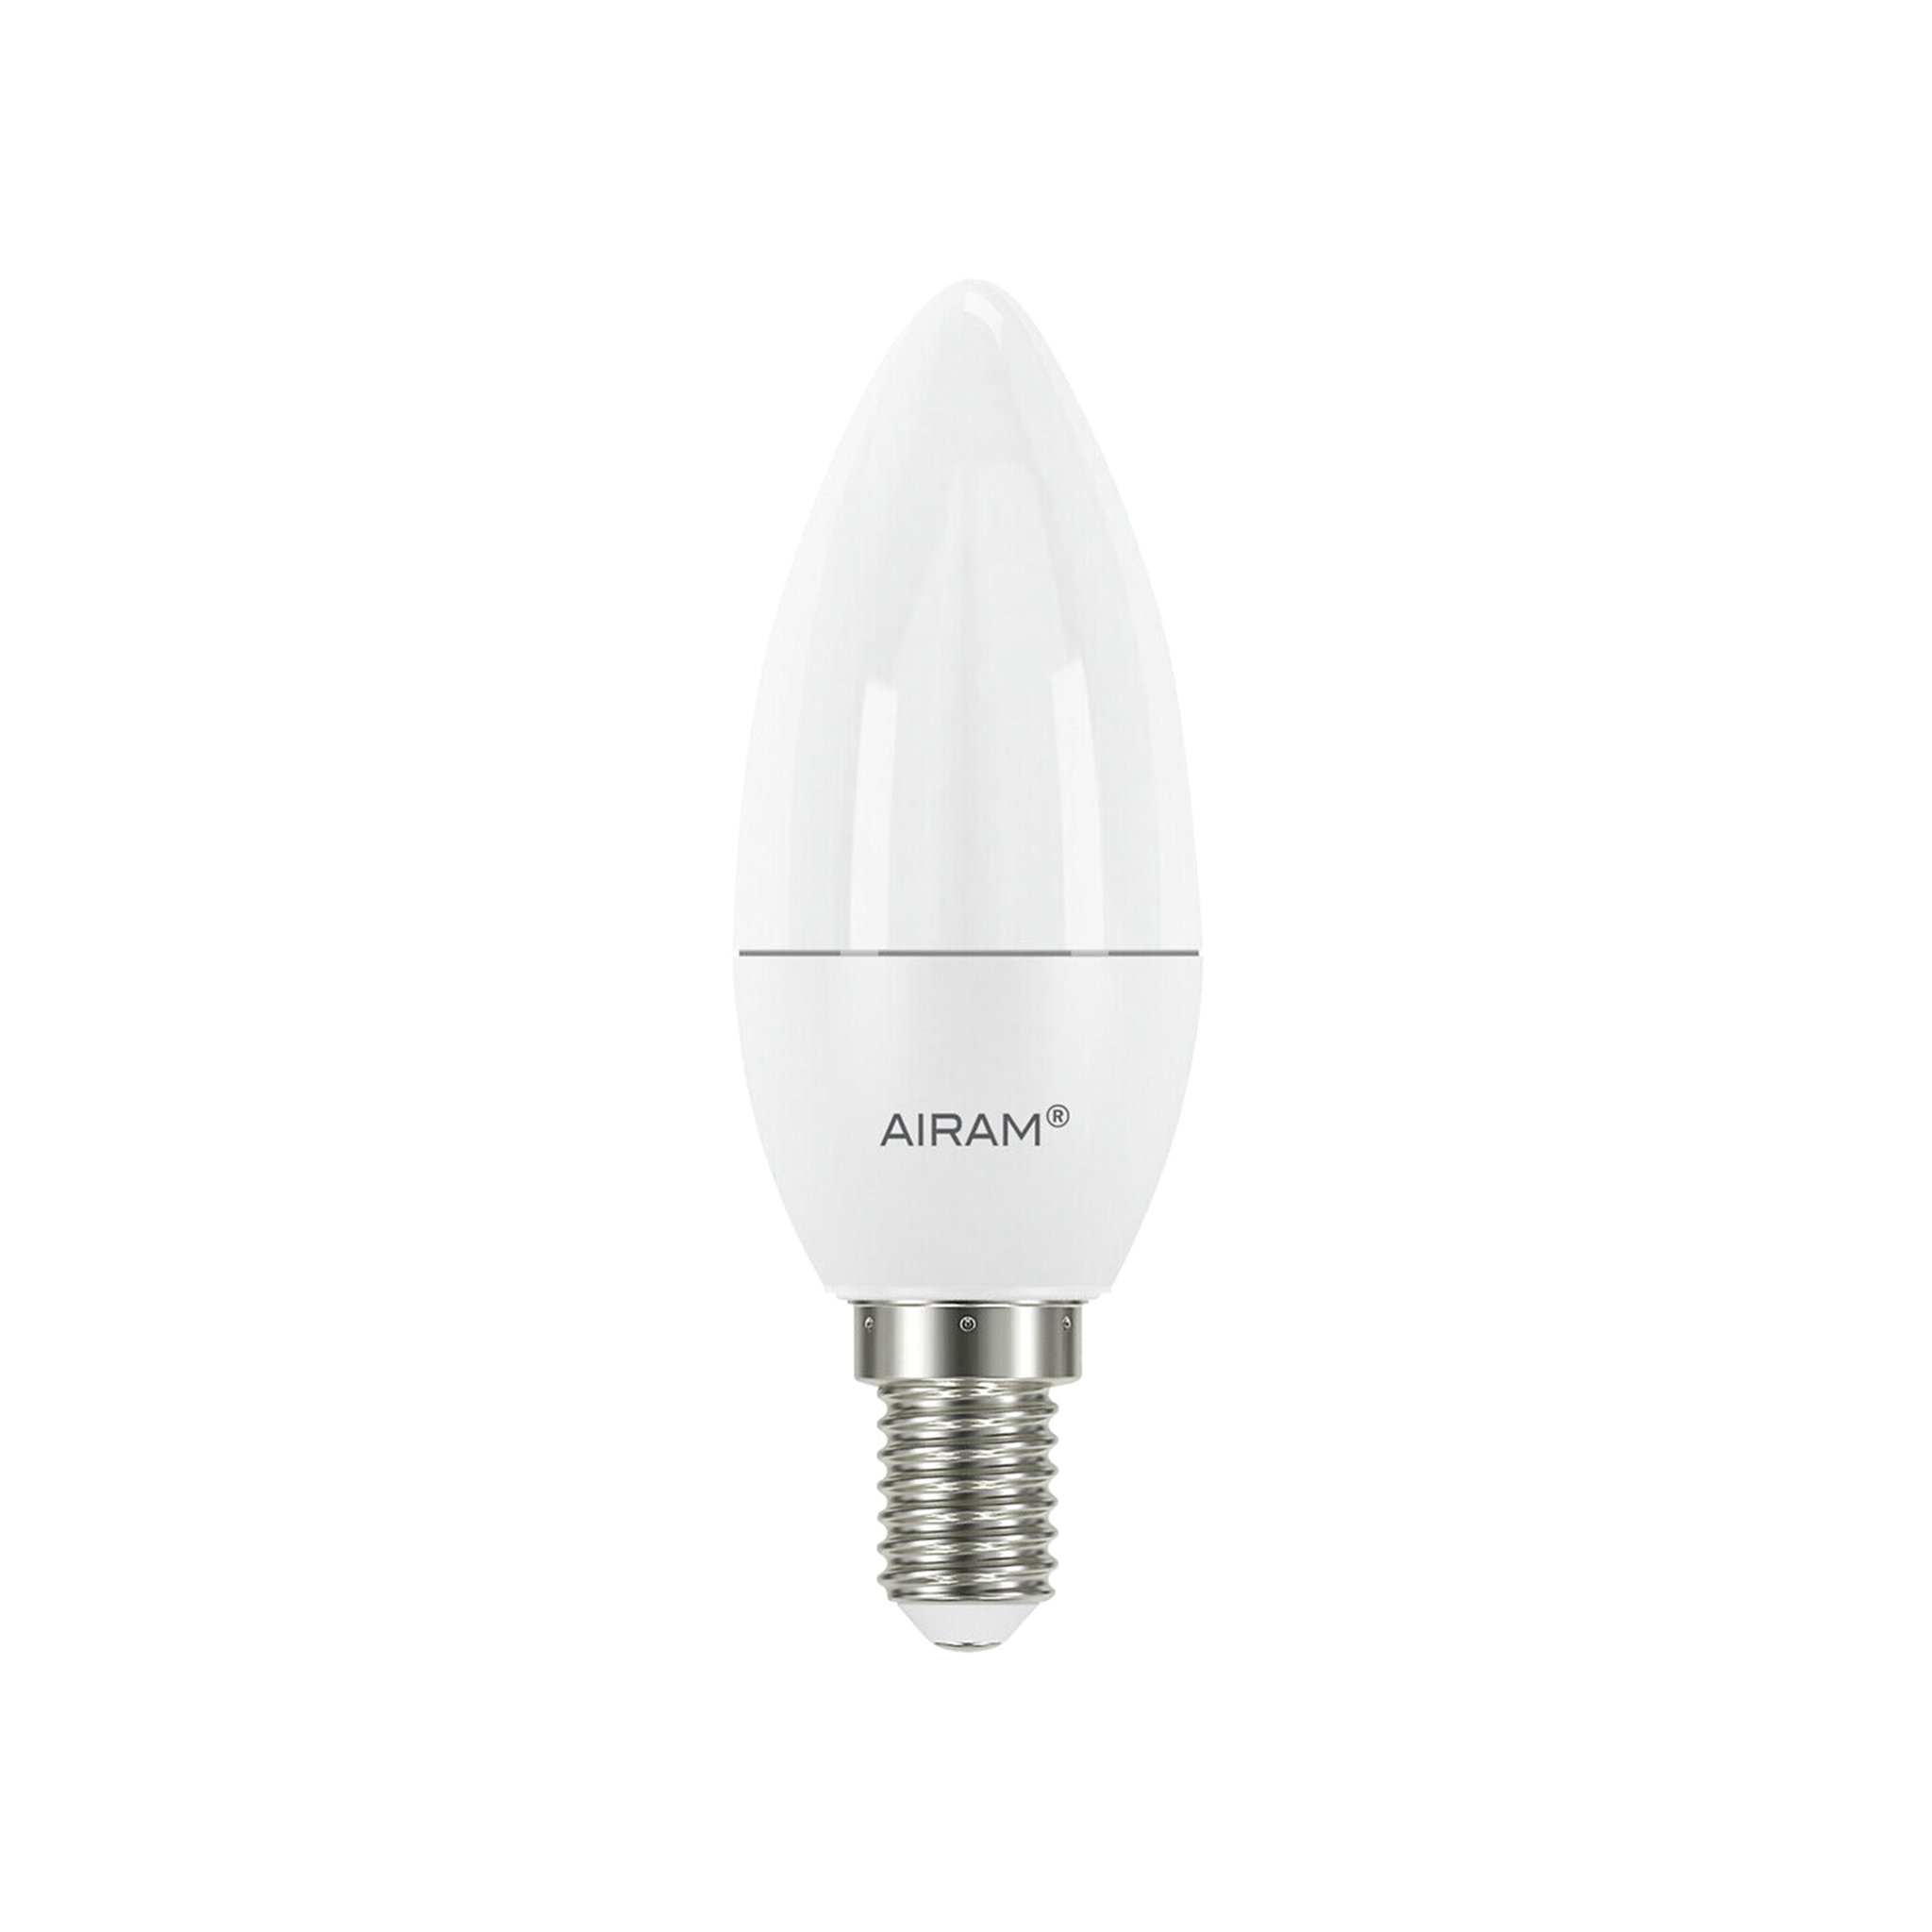 LED-lampa Airam E14 Candle - 2700K / 6 W / Dimbar